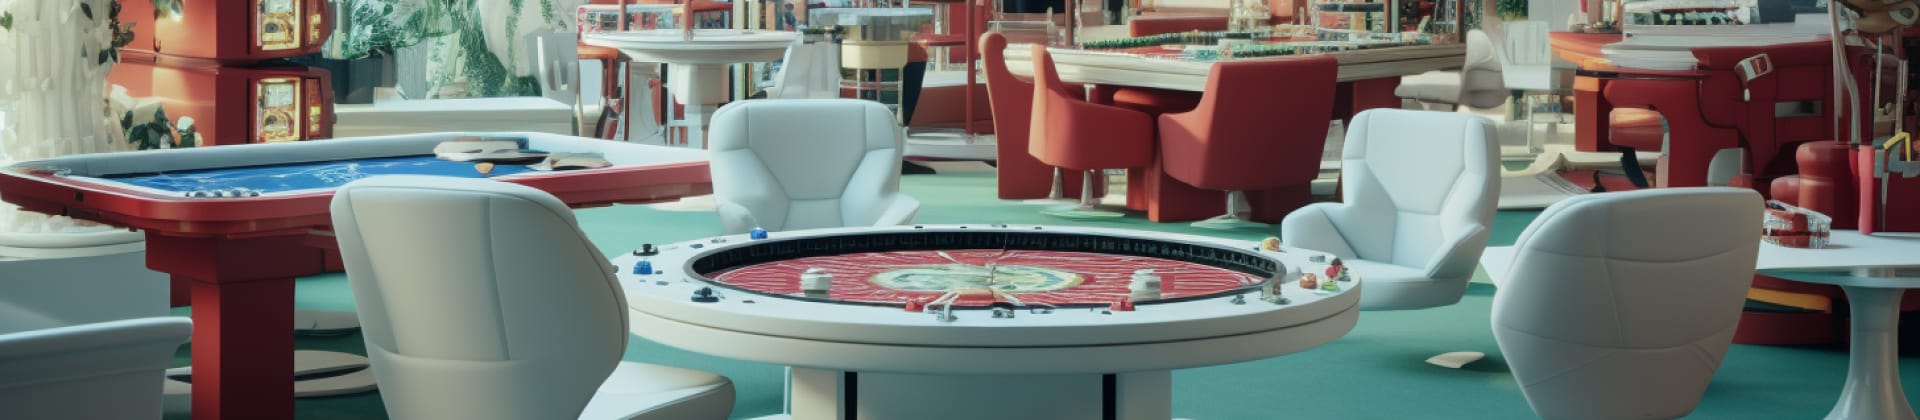 Maximera vinster med hjælp af bonusser på casino uden svensk licens